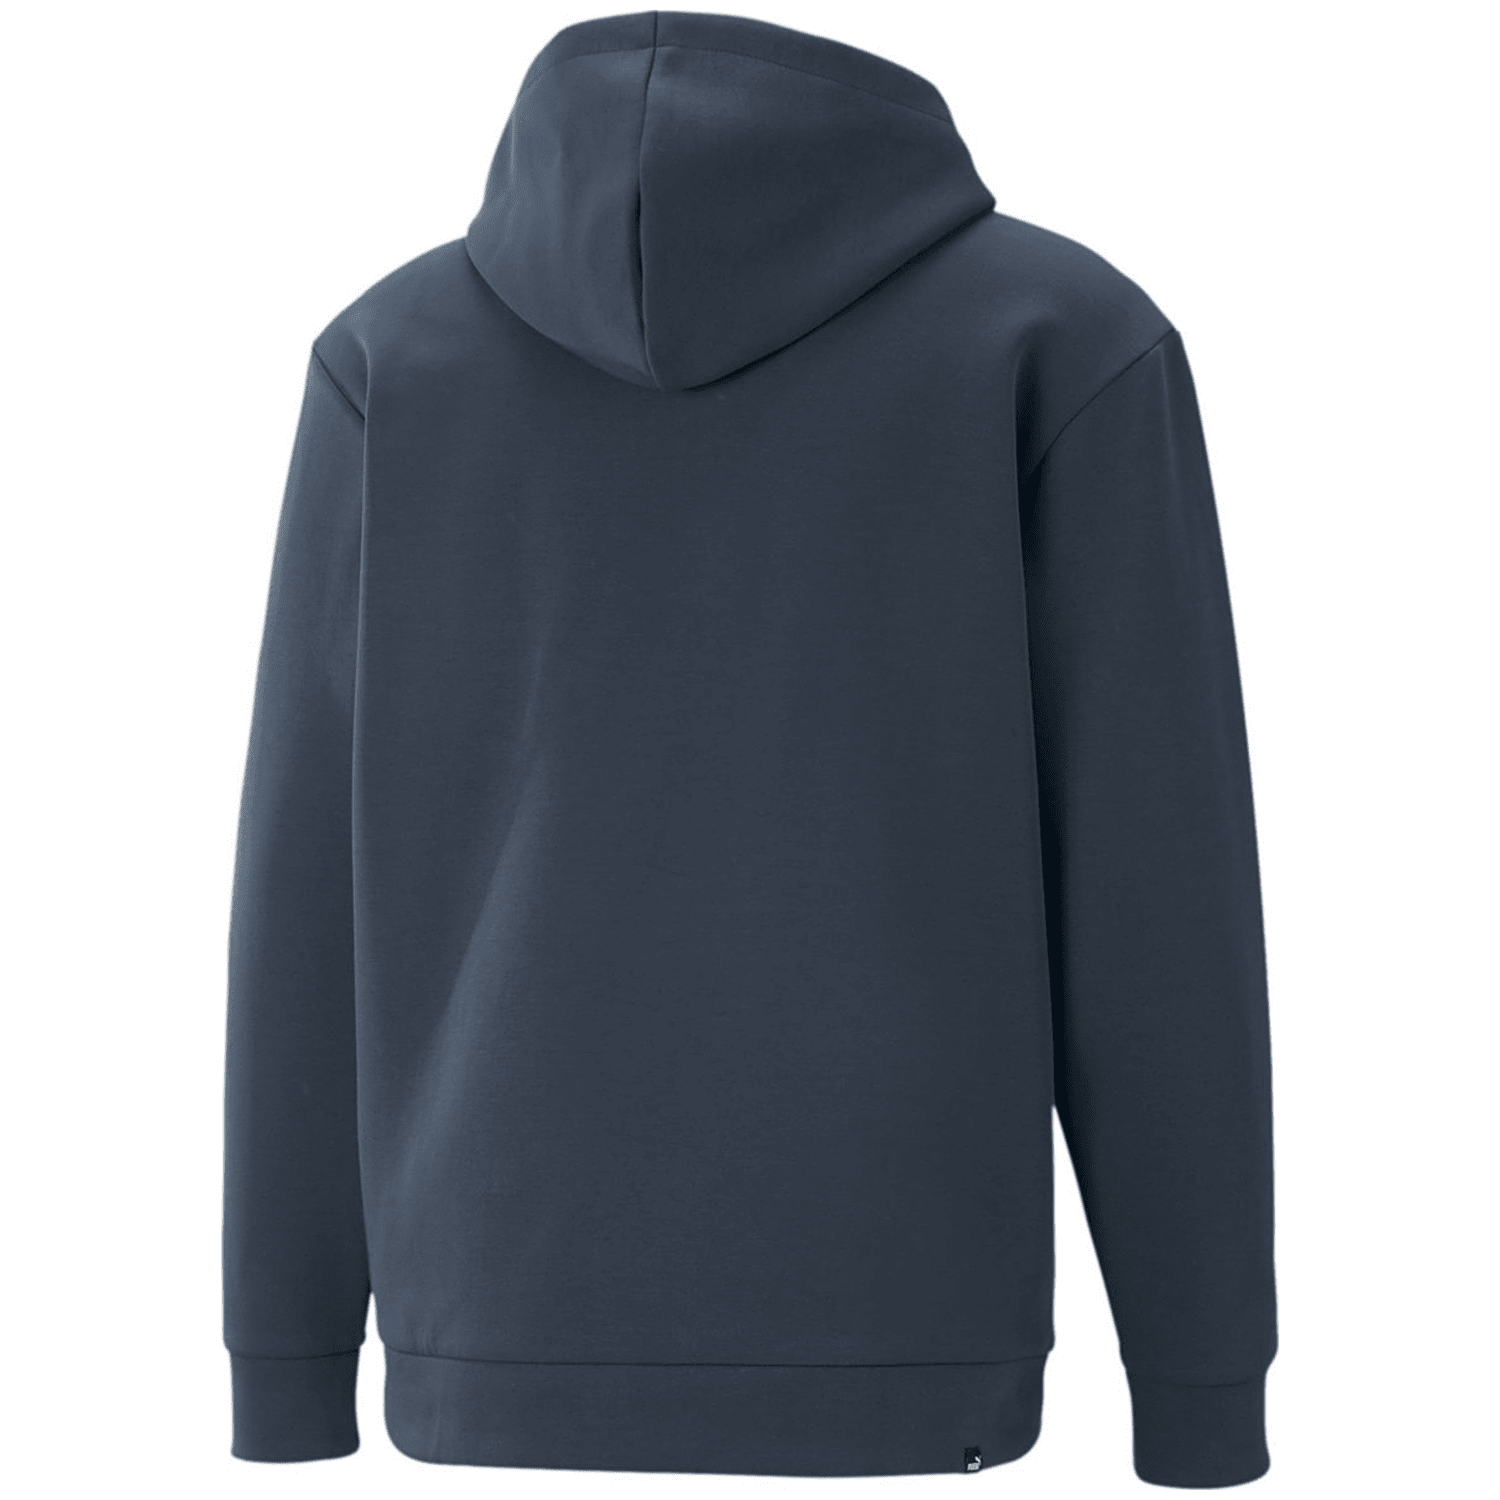 Puma Rad/cal Half-zip DK Herren Kapuzensweater